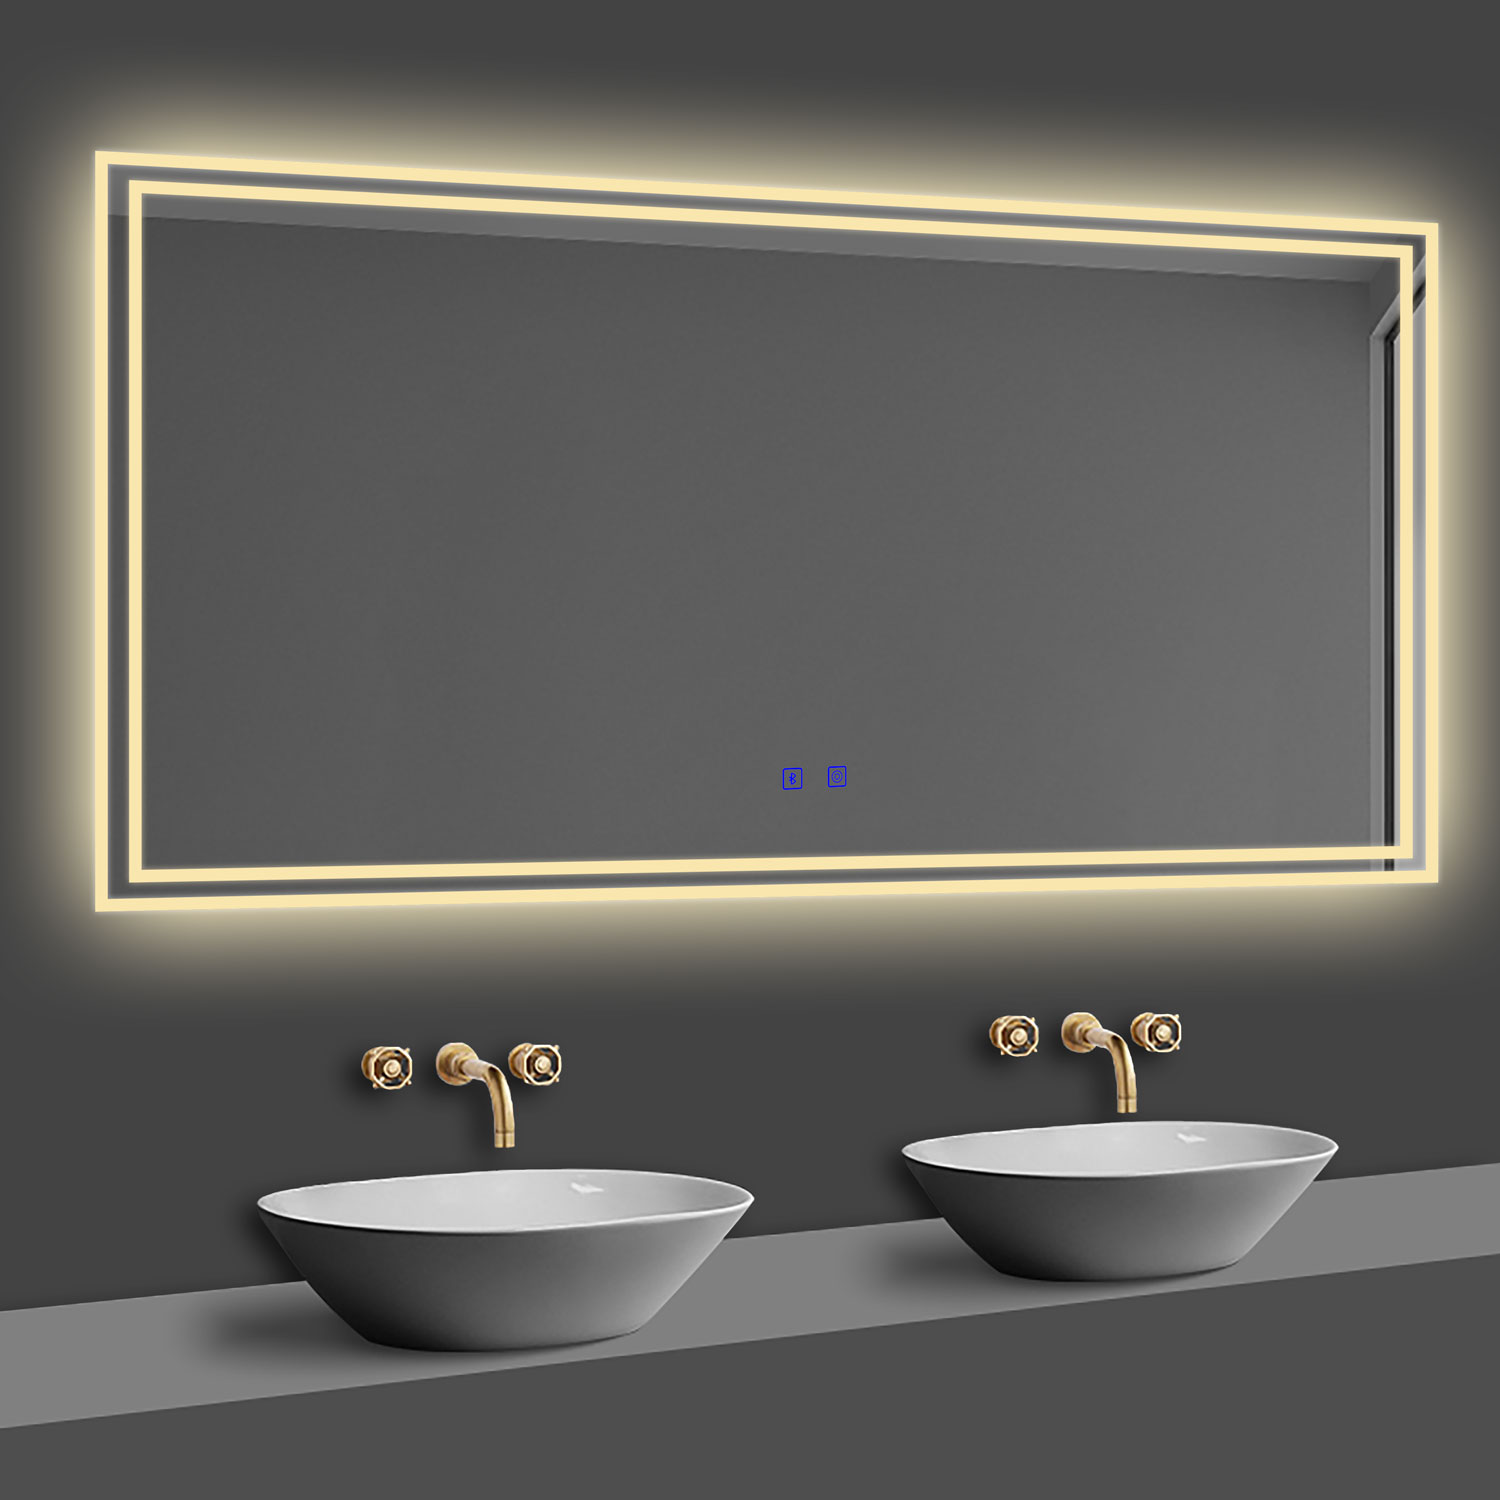 LED Badspiegel 120x70 cm Bluetooth TOUCH BESCHLAGFREI Wandspiegel Kalt/Neutral/Warmweiß ,Dimmbar